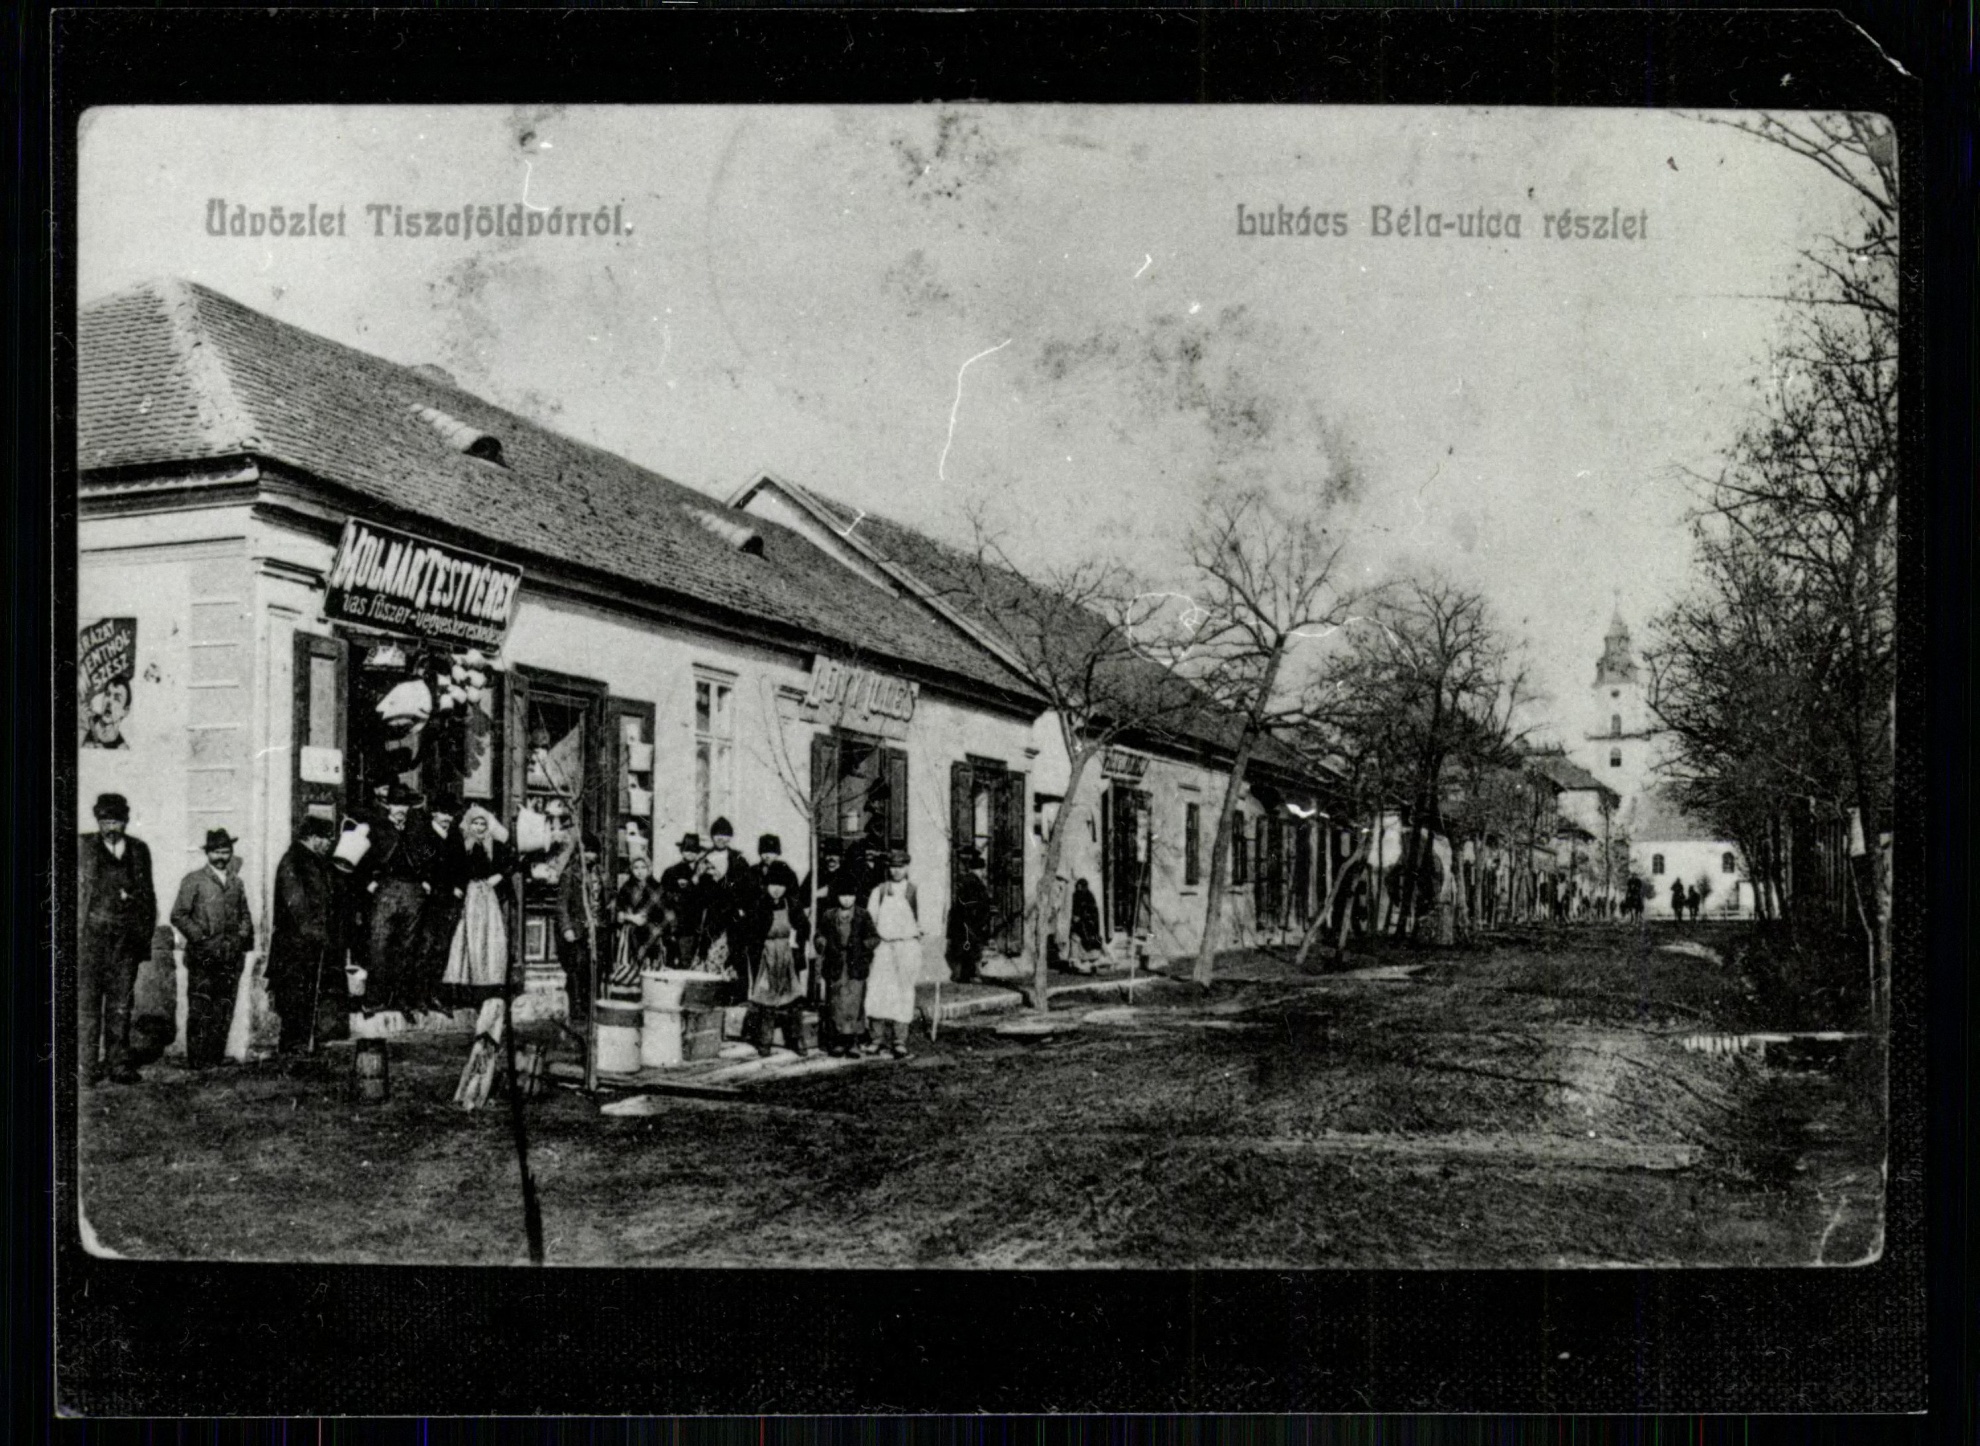 Tiszaföldvár; Lukács Béla utca részlet (Magyar Kereskedelmi és Vendéglátóipari Múzeum CC BY-NC-ND)